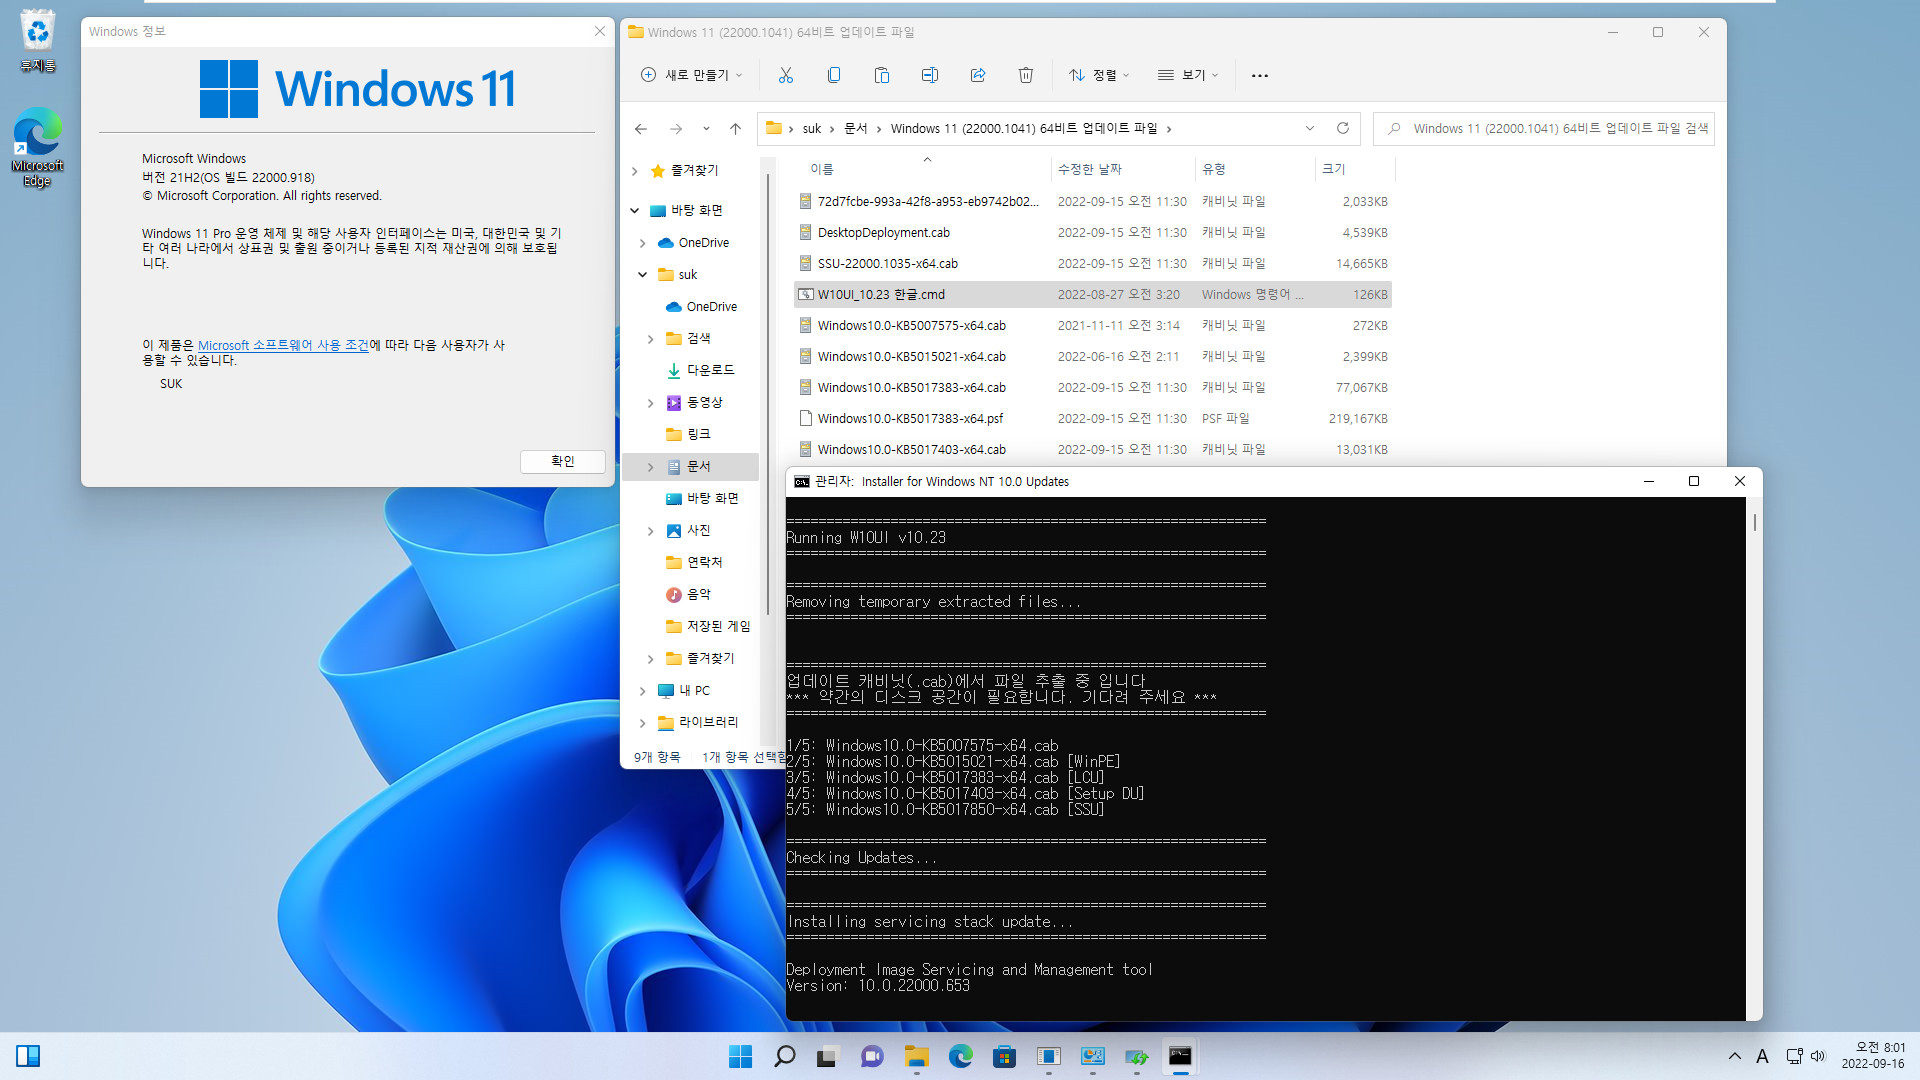 2022-09-16 금요일 - 릴리스 프리뷰 채널 - Windows 11 버전 21H2, 빌드 22000.1041 - 누적 업데이트 KB5017383 - vmware에 설치 테스트 2022-09-16_080128.jpg